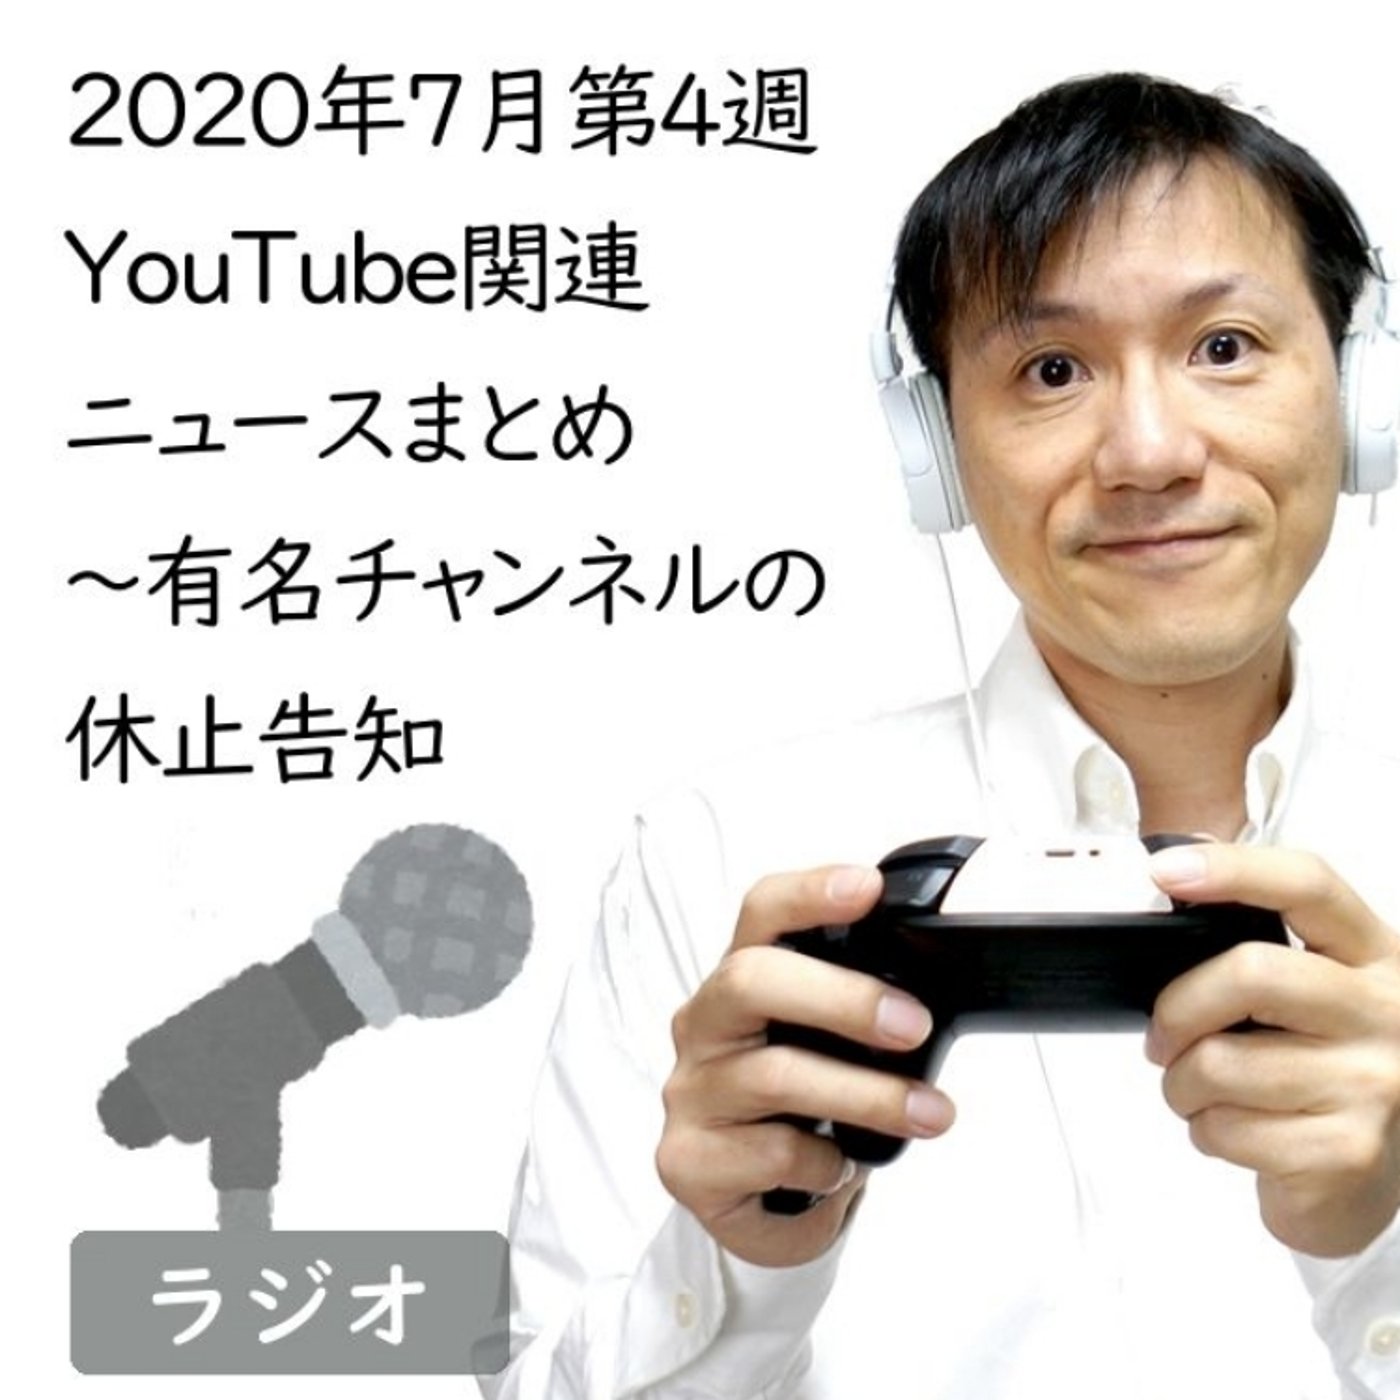 2020年7月第4週YouTube関連ニュースまとめ～大物チャンネル休止へ【#1